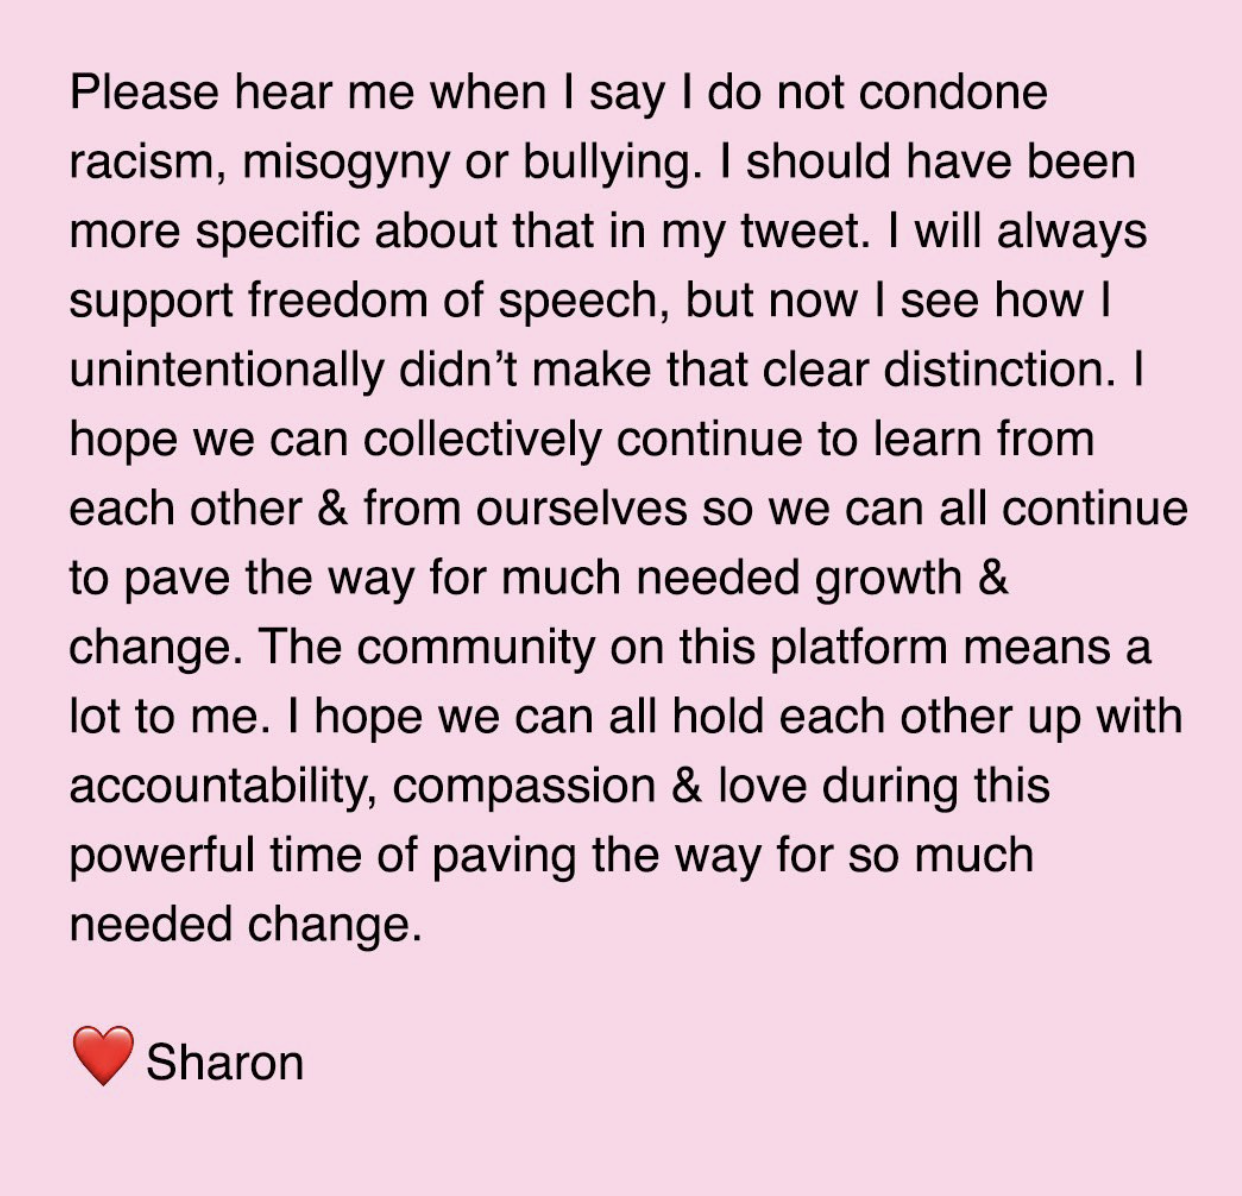 Sharon apology